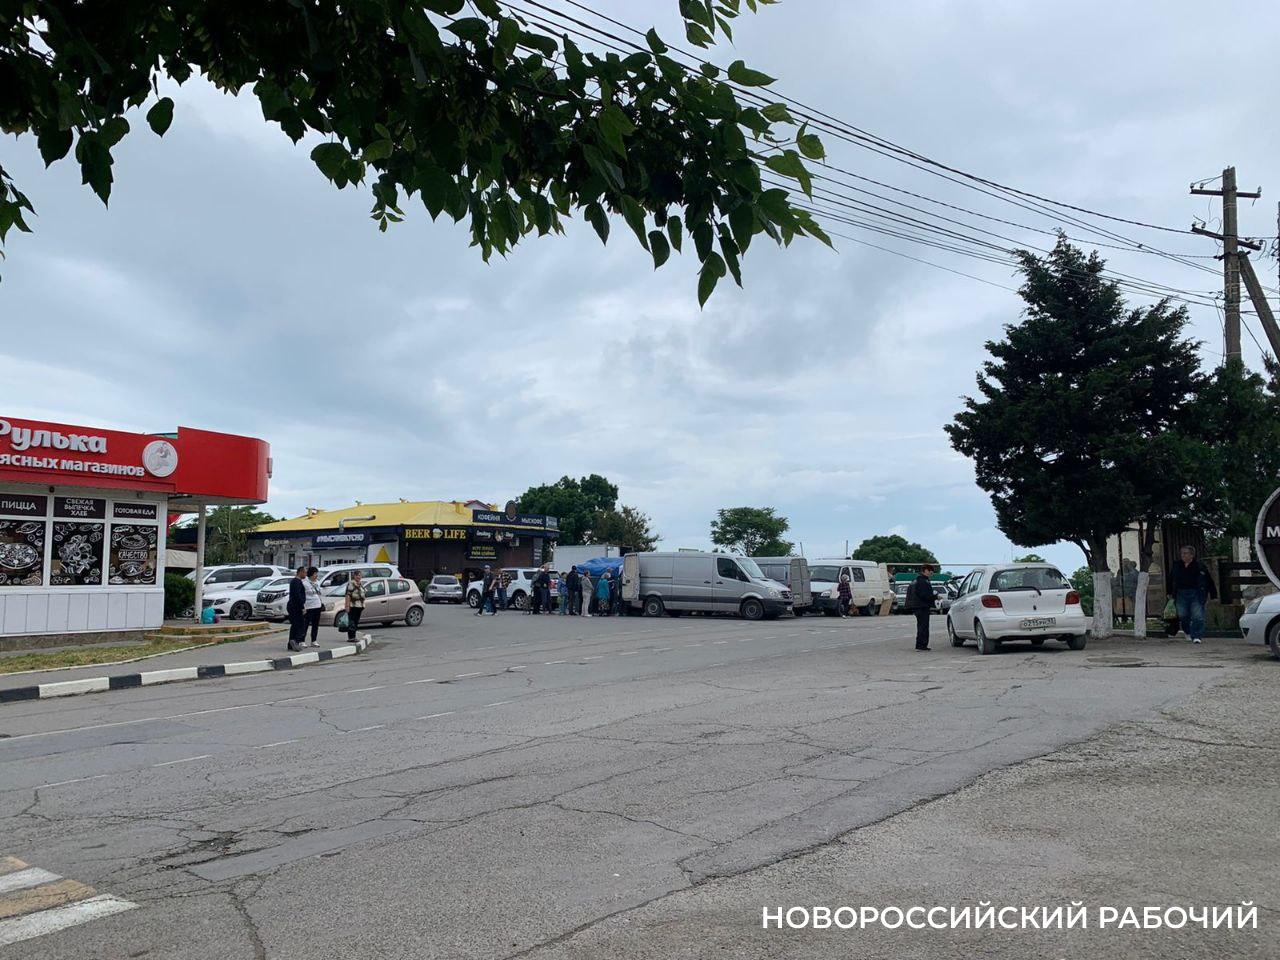 «Фермеры торгуют прямо на дороге», — житель элитного посёлка под Новороссийском недоволен ярмаркой